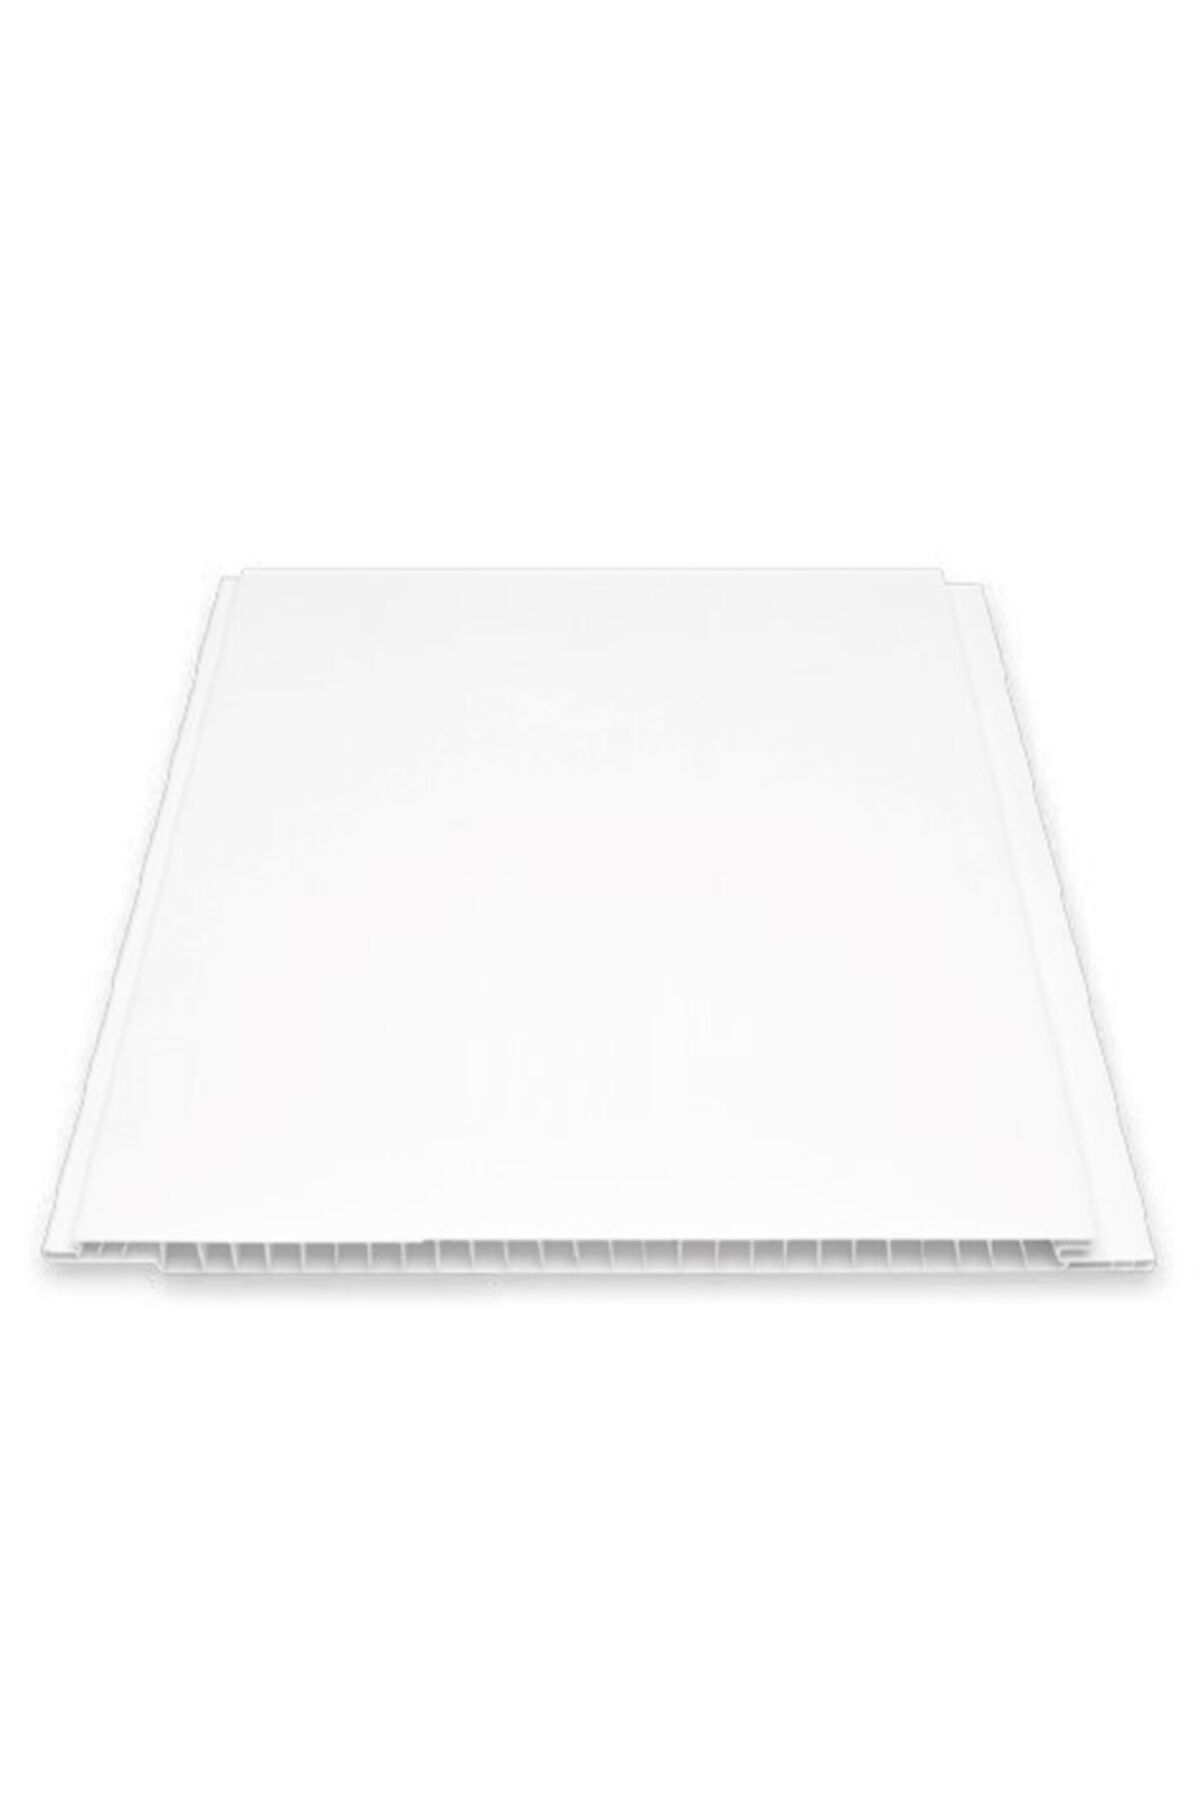 Genel Markalar Düz Beyaz Plastik Pvc Duvar - Tavan / 10 Adet 20 Cm X 3 Metre - 6 Metrekare